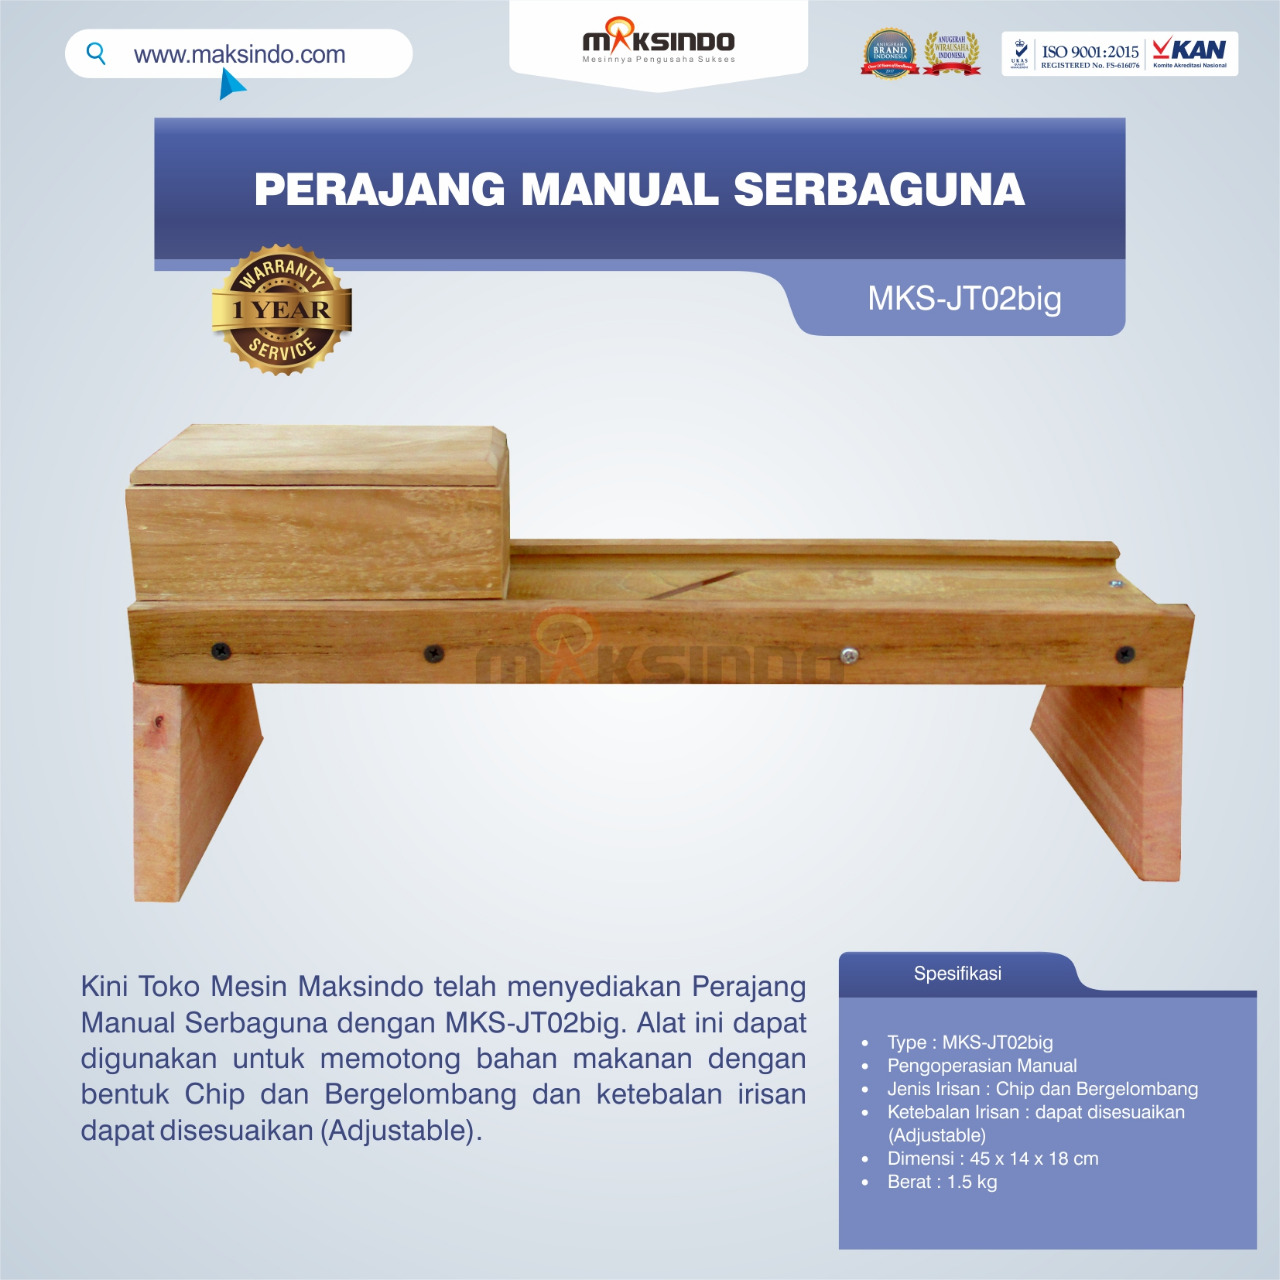 Jual Perajang Manual Serbaguna MKS-JT02big di Jakarta